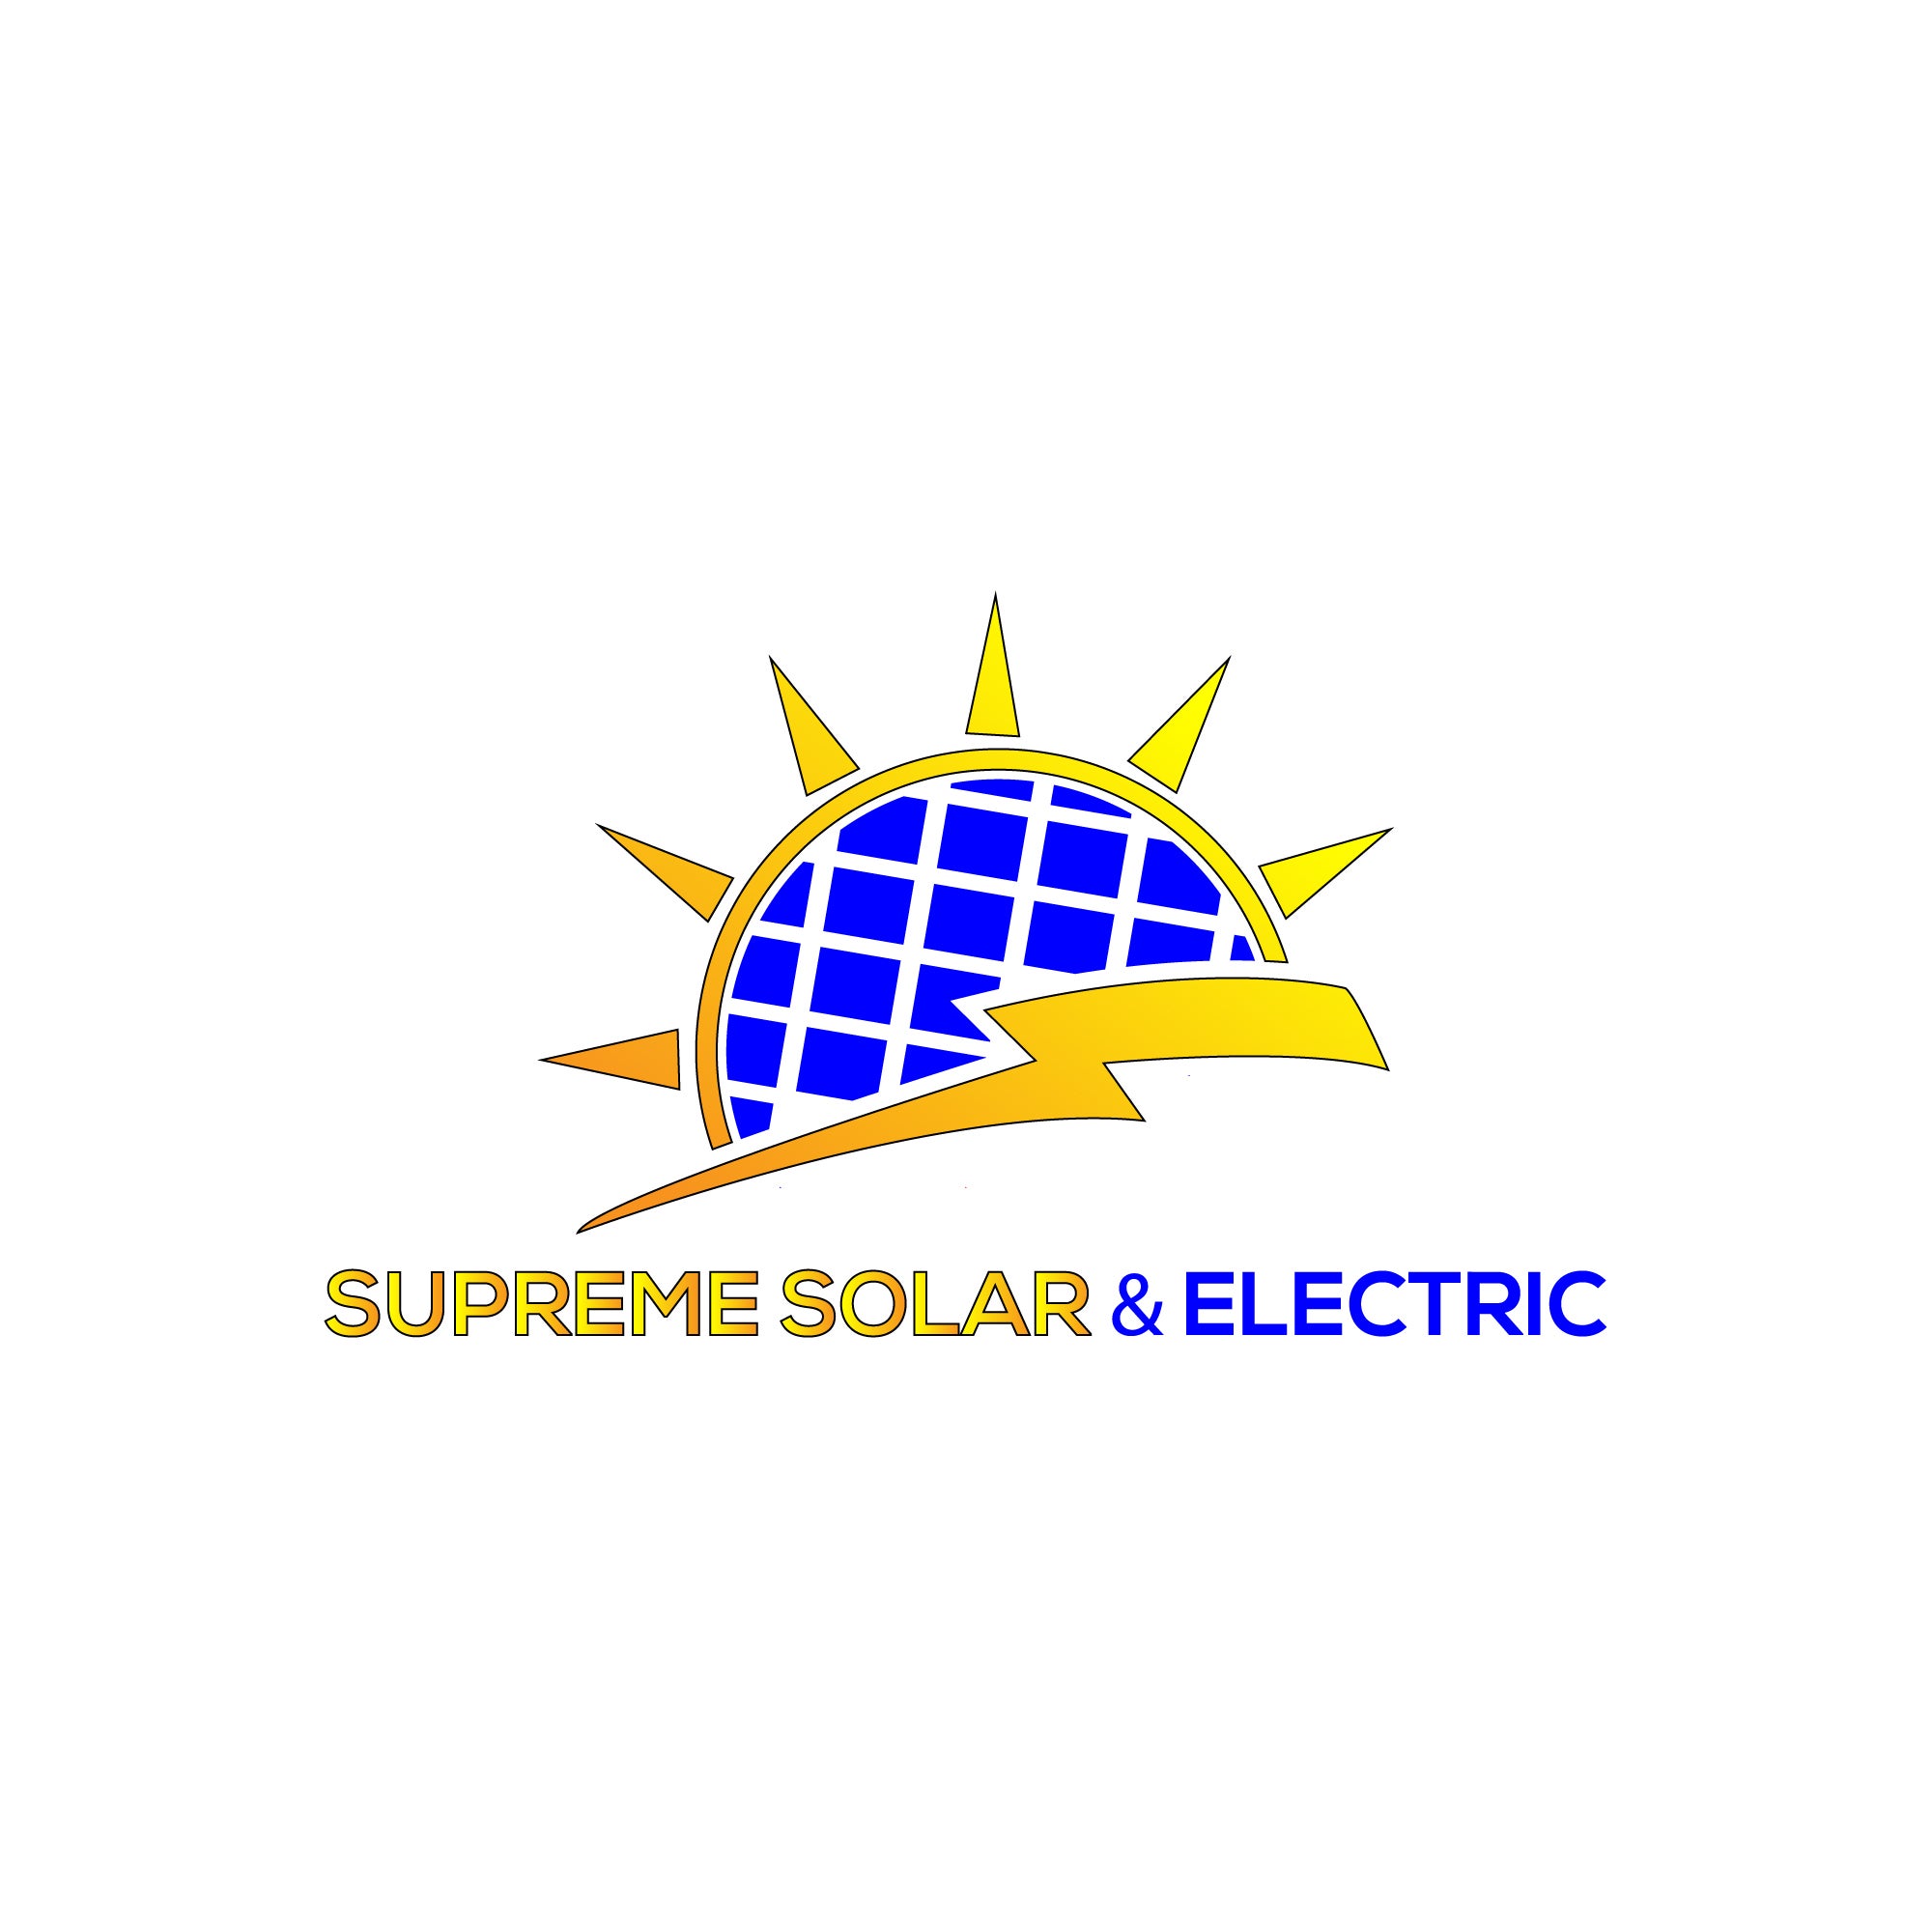 Supreme Solar & Electric